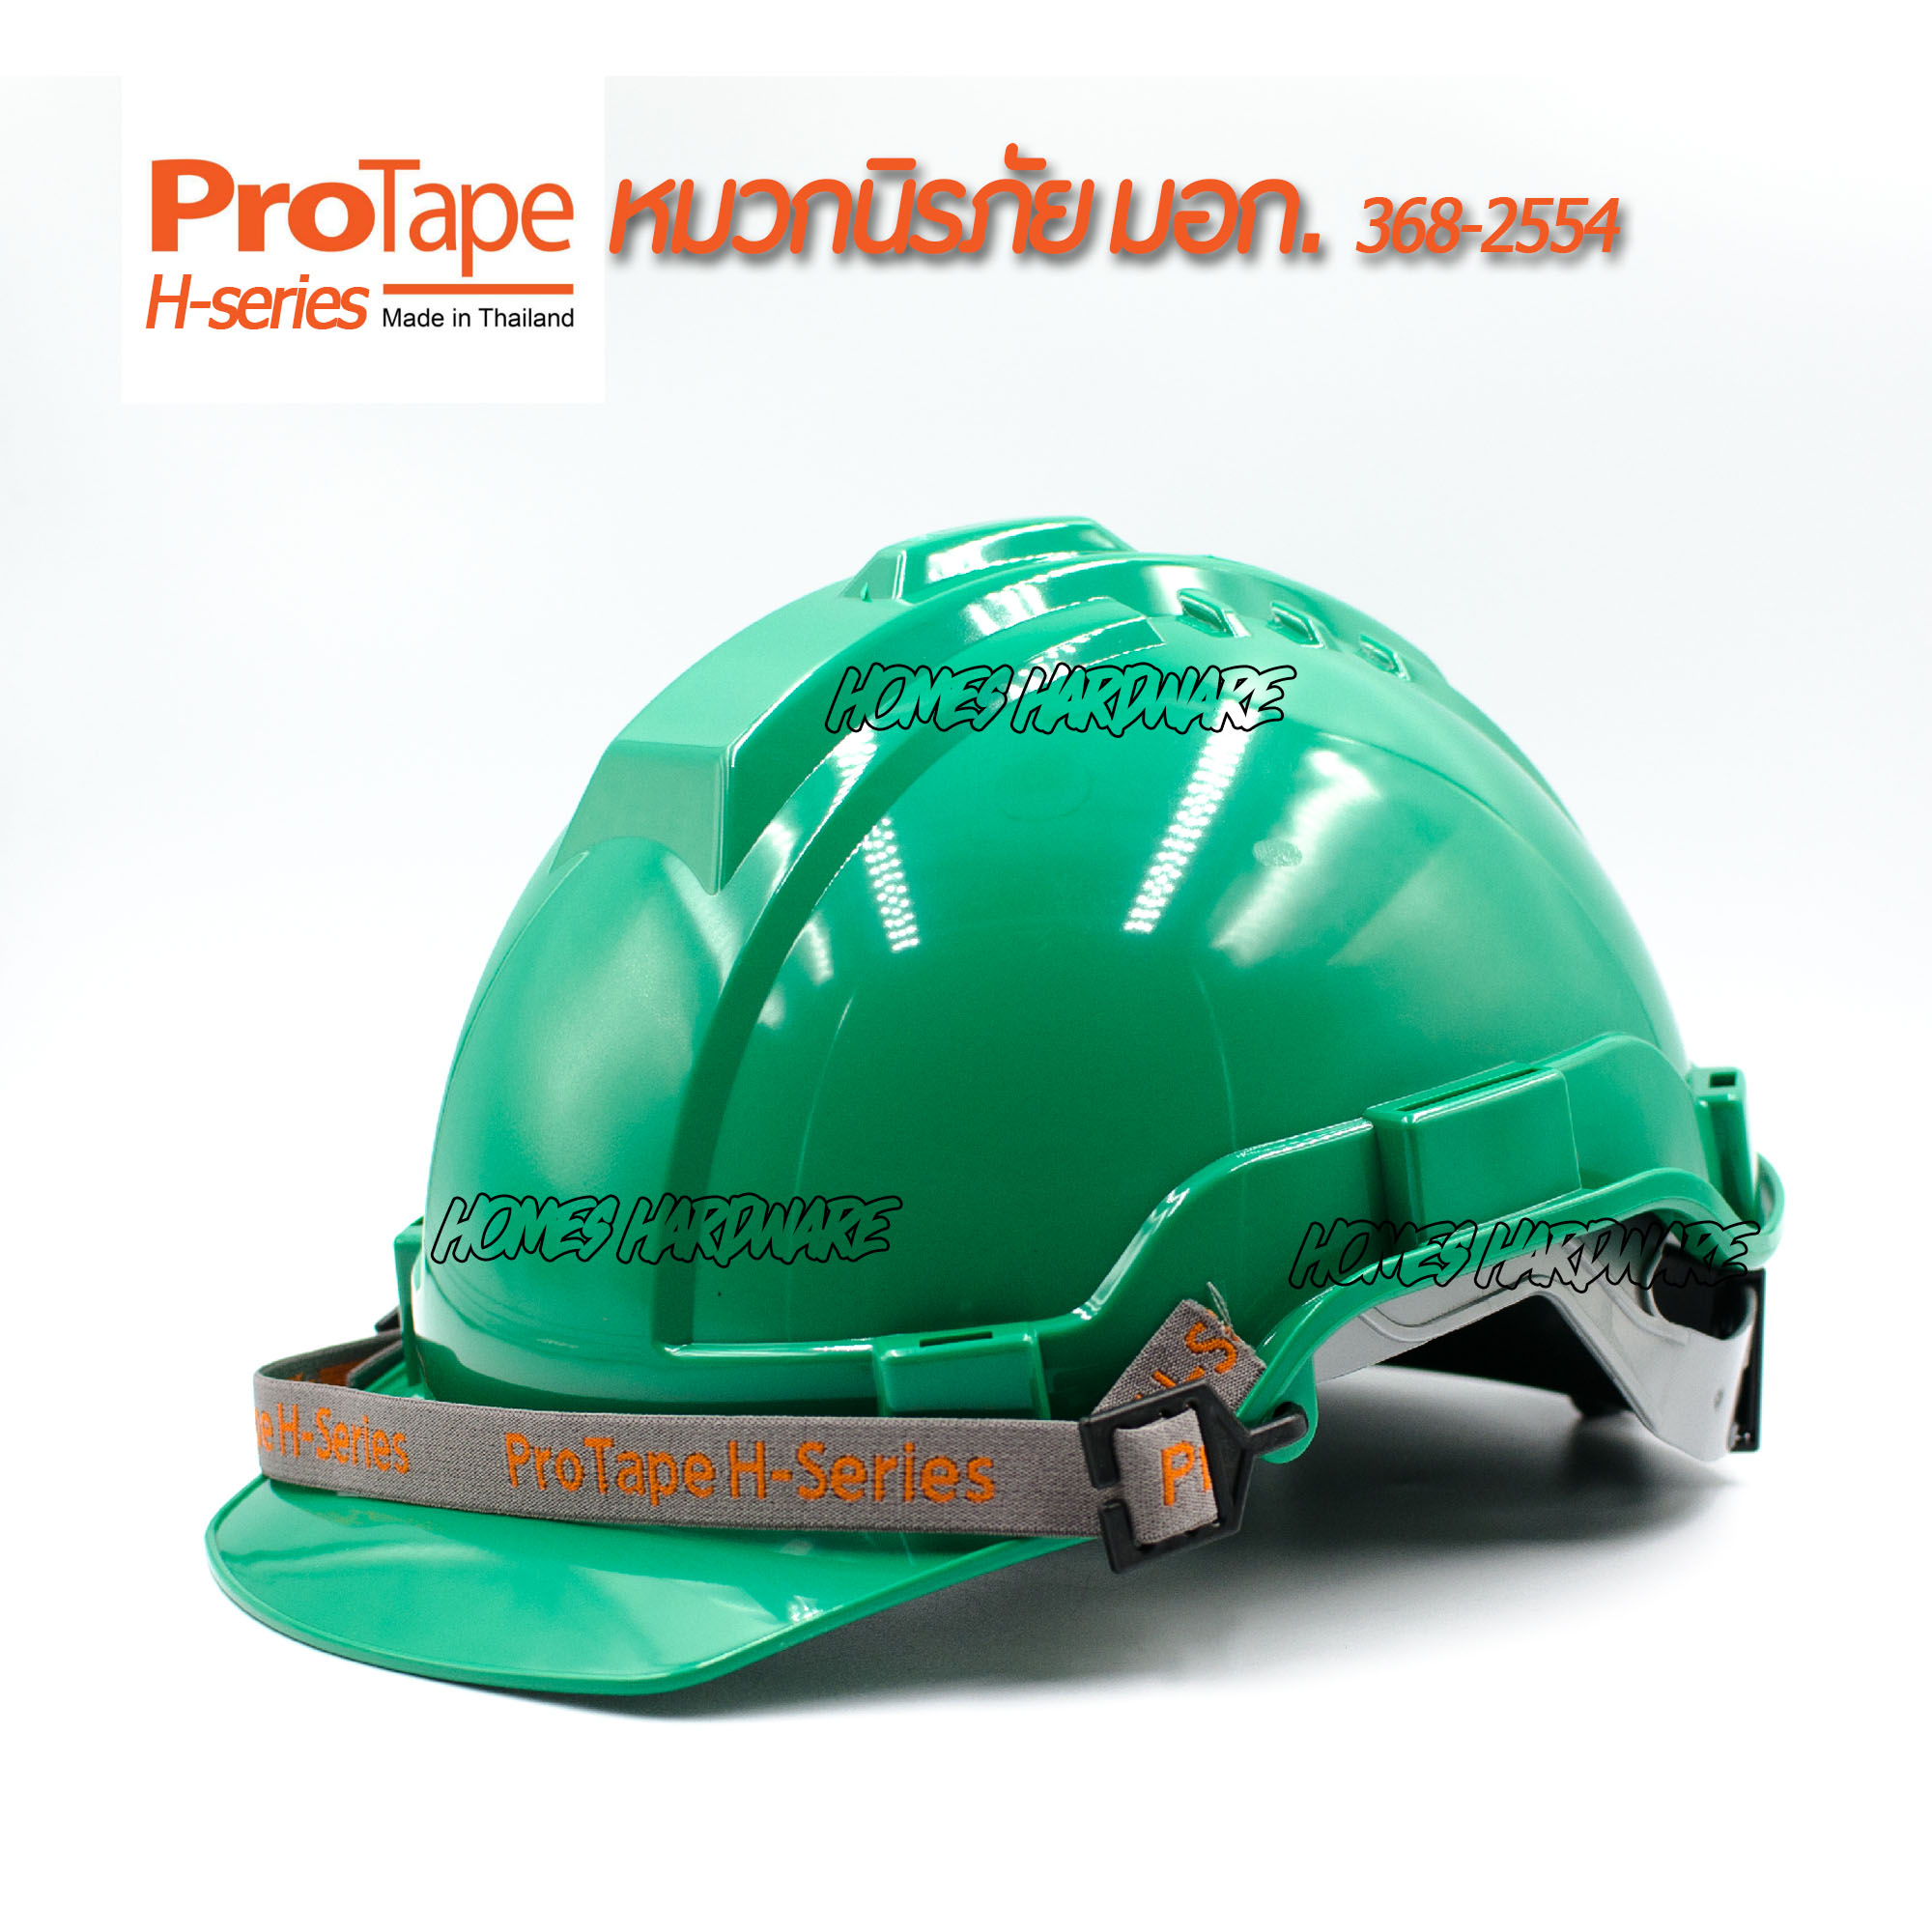 หมวกนิรภัย หมวกเซฟตี้ PROTAPE H-series สีเขียว ป้องกันแรงกระแทกสูง ผ่านการรับรองมาตรฐานความปลอยภัย มอก.368-2554 หมวกป้องกันศรีษะ